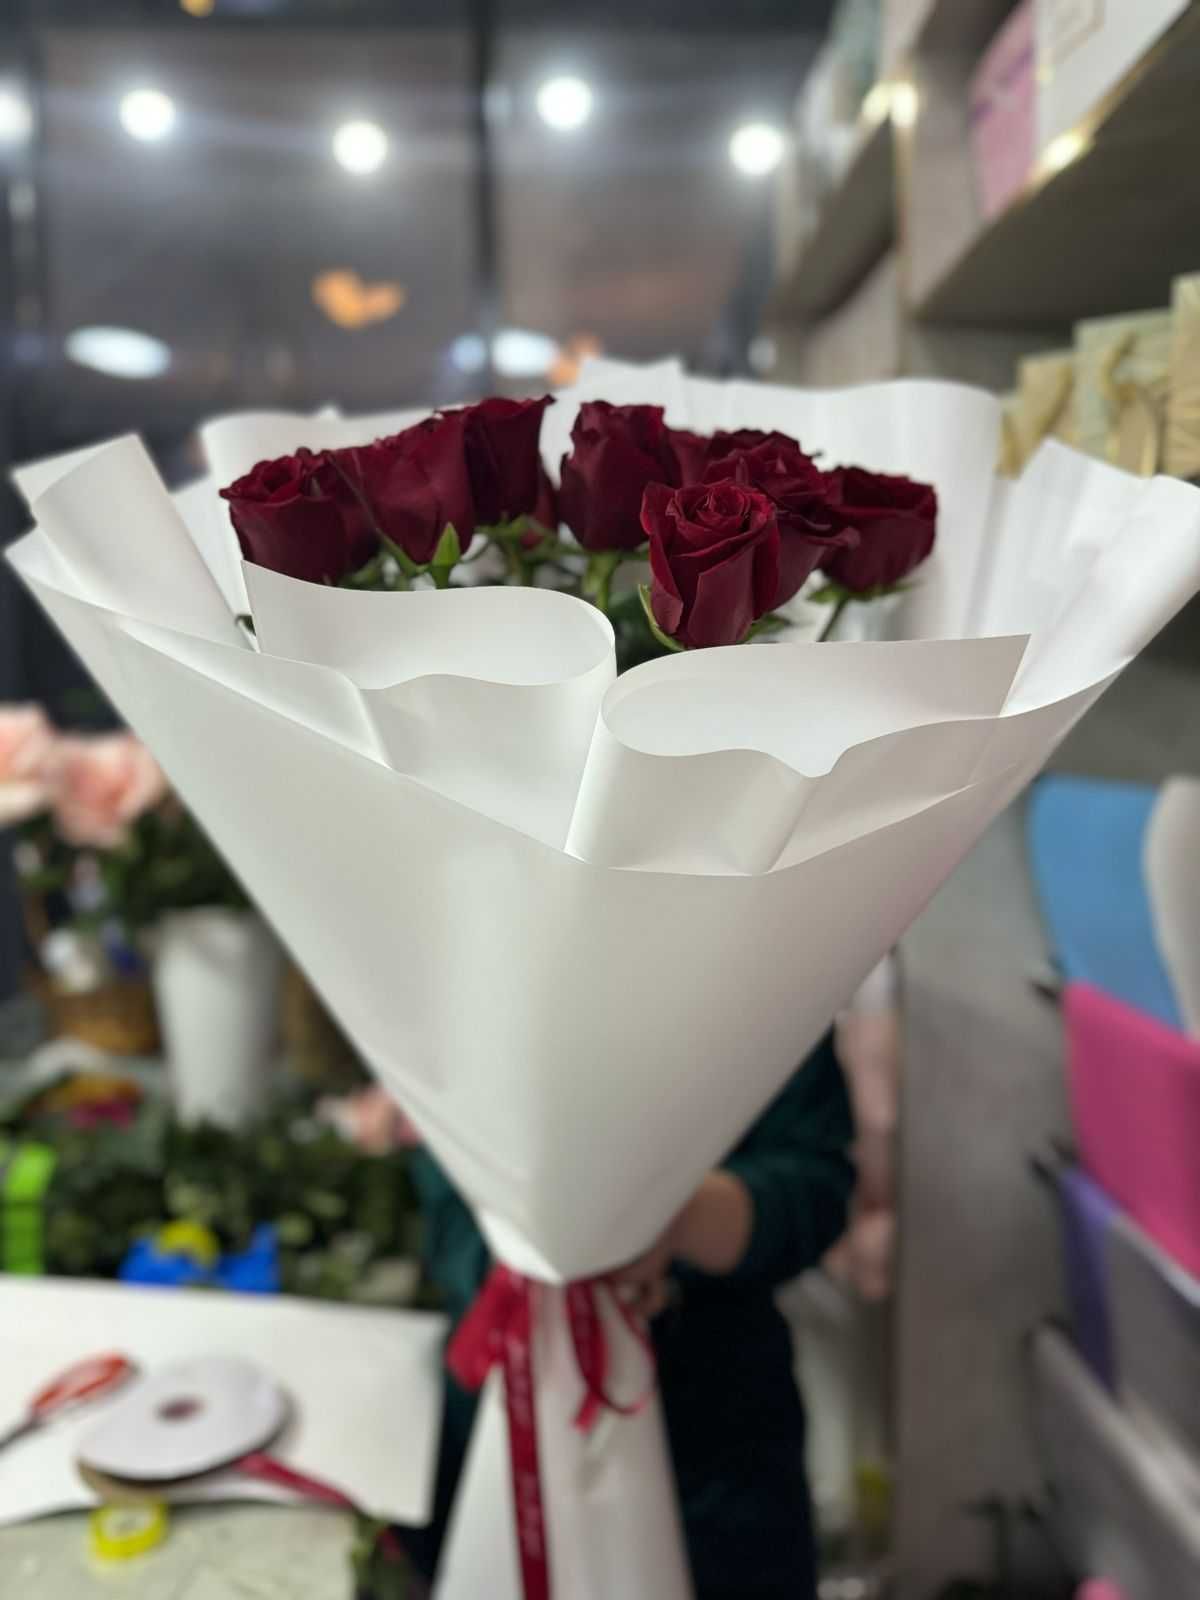 Цветы Розы Тюльпаны  по доступным ценам